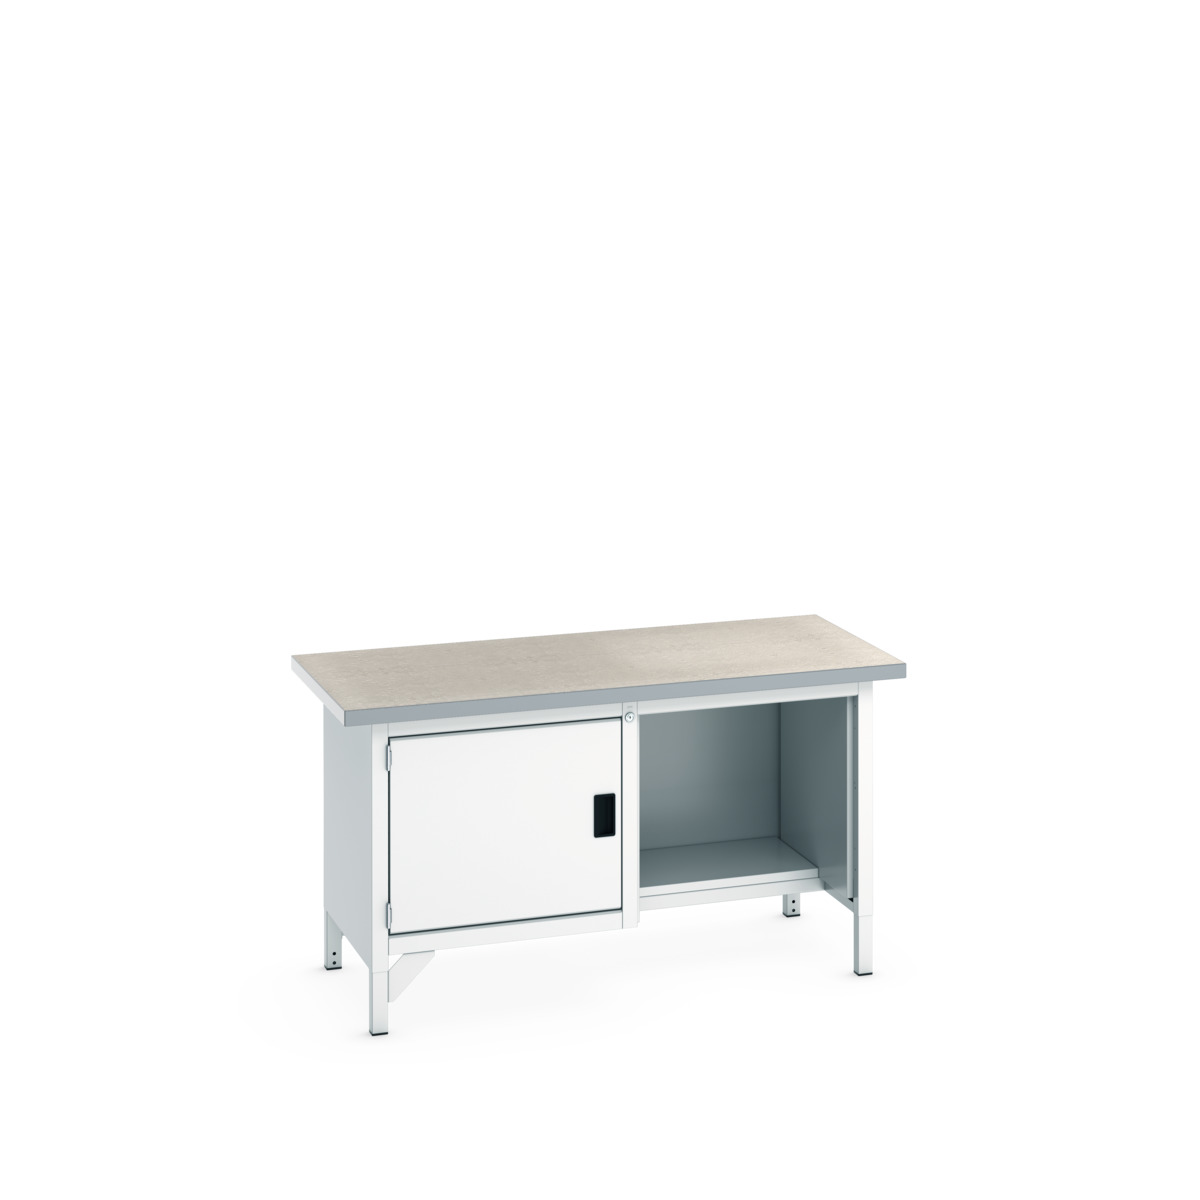 41002036.16V - cubio storage bench (lino)